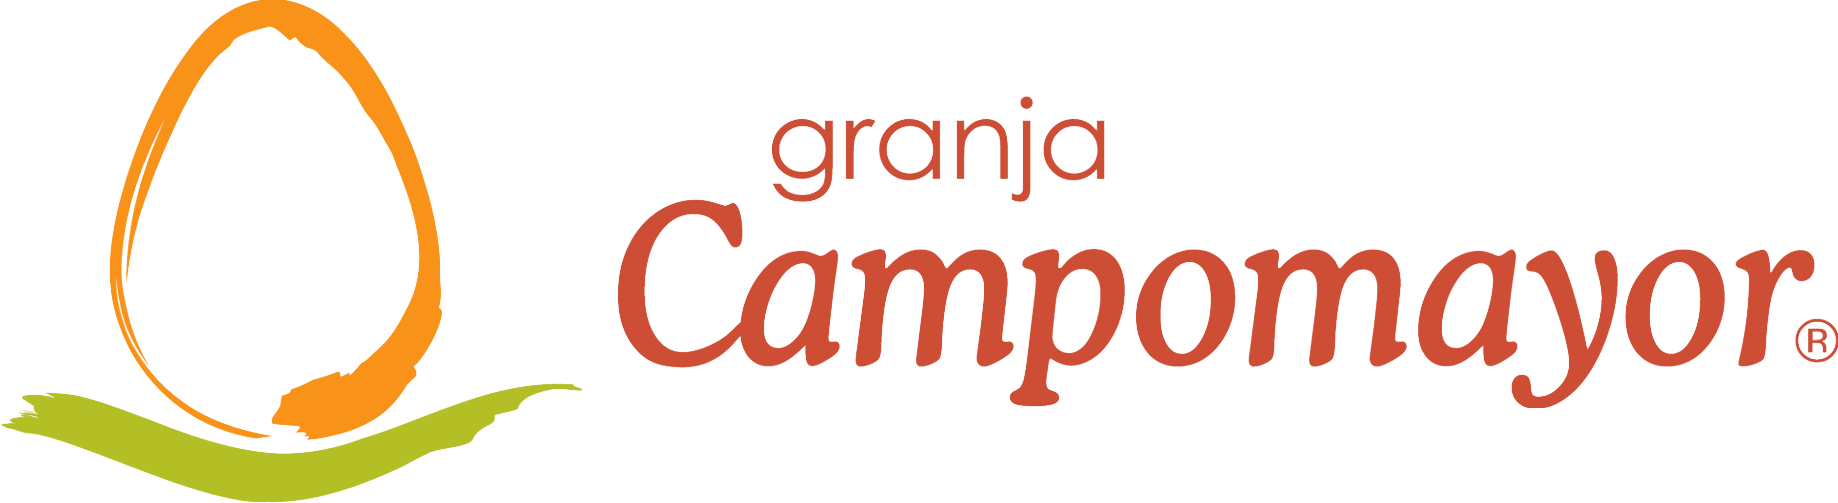 Granja Campomayor